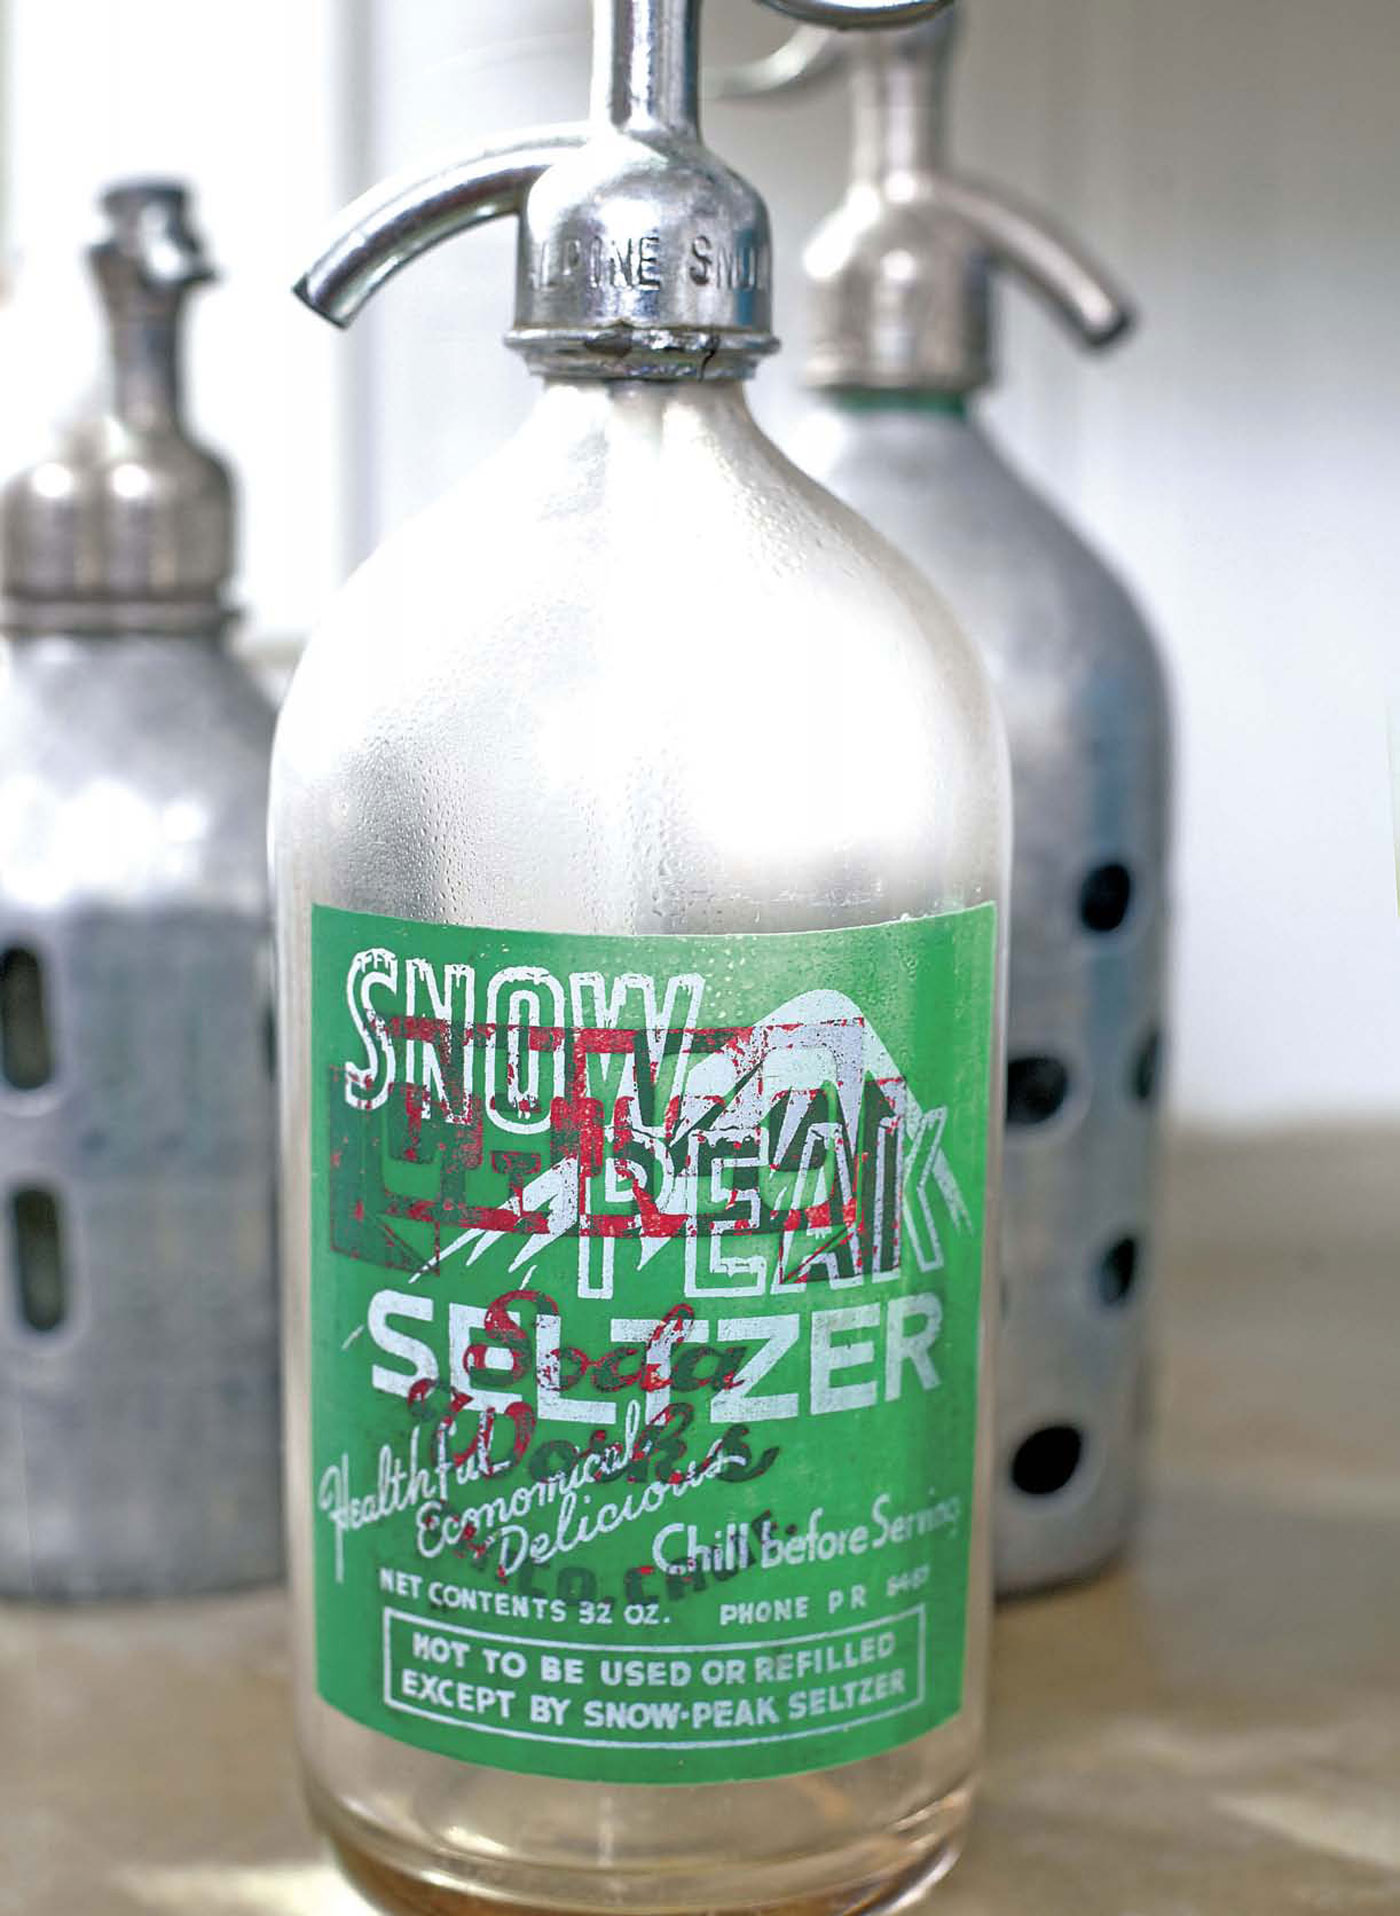 Vintage Seltzer Bottle 70% off cheap.